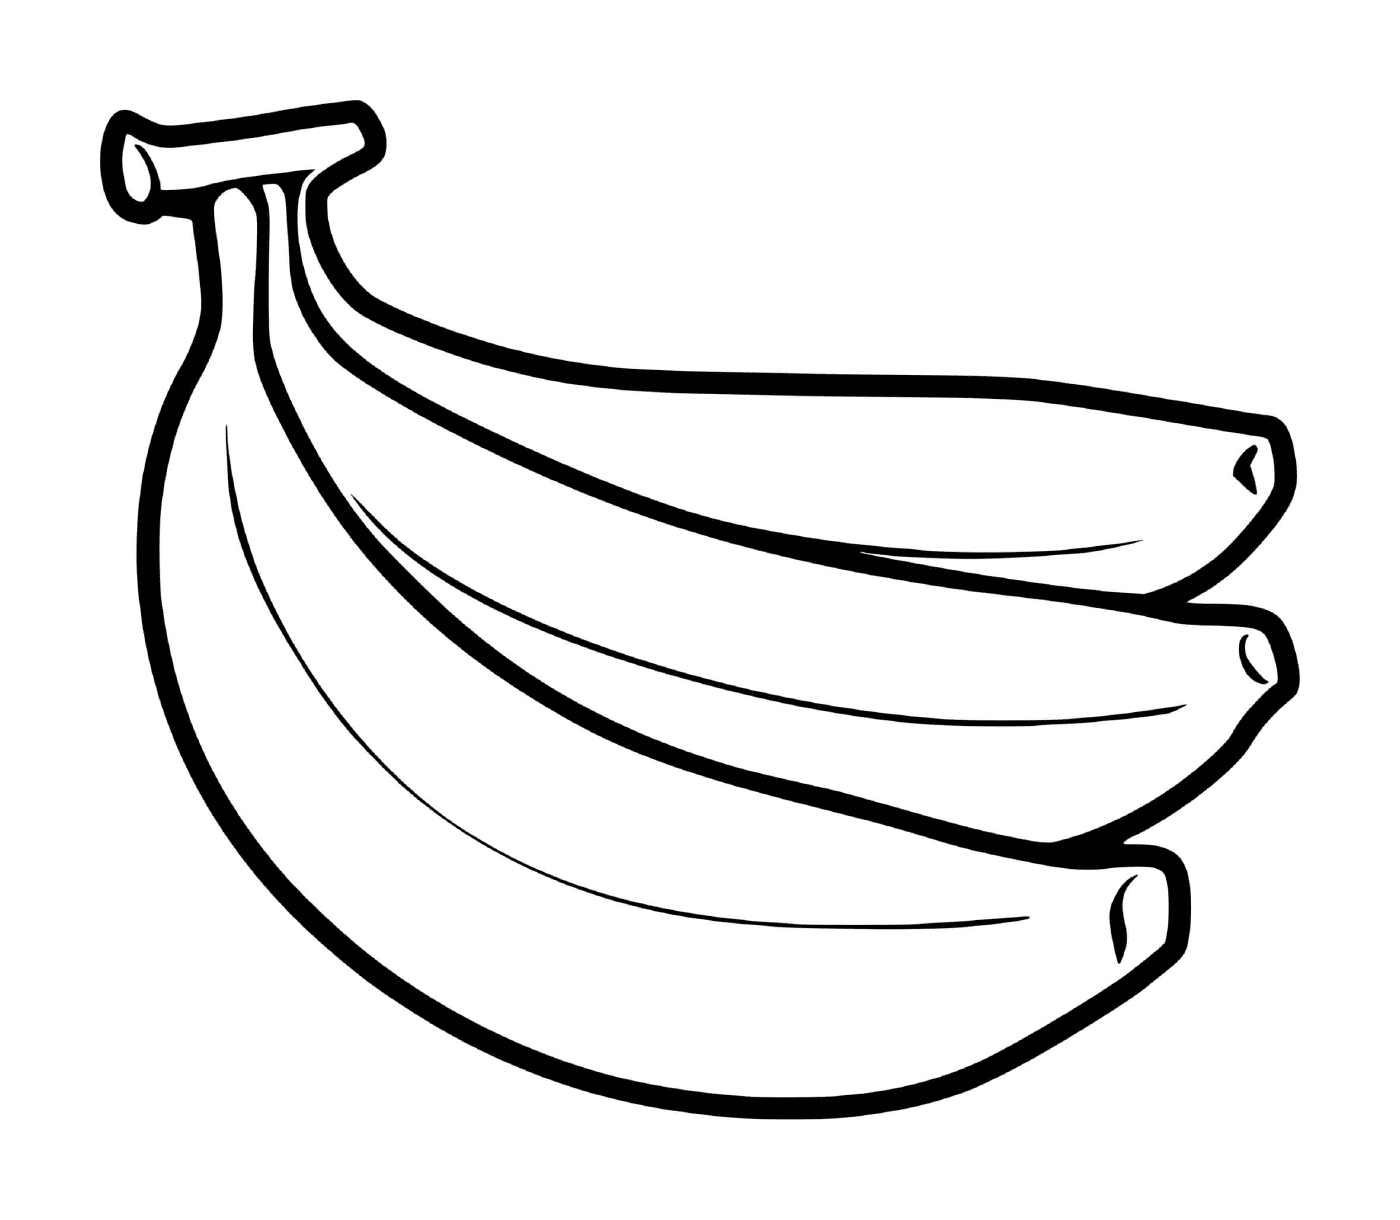  Um monte de bananas plantadas no chão 